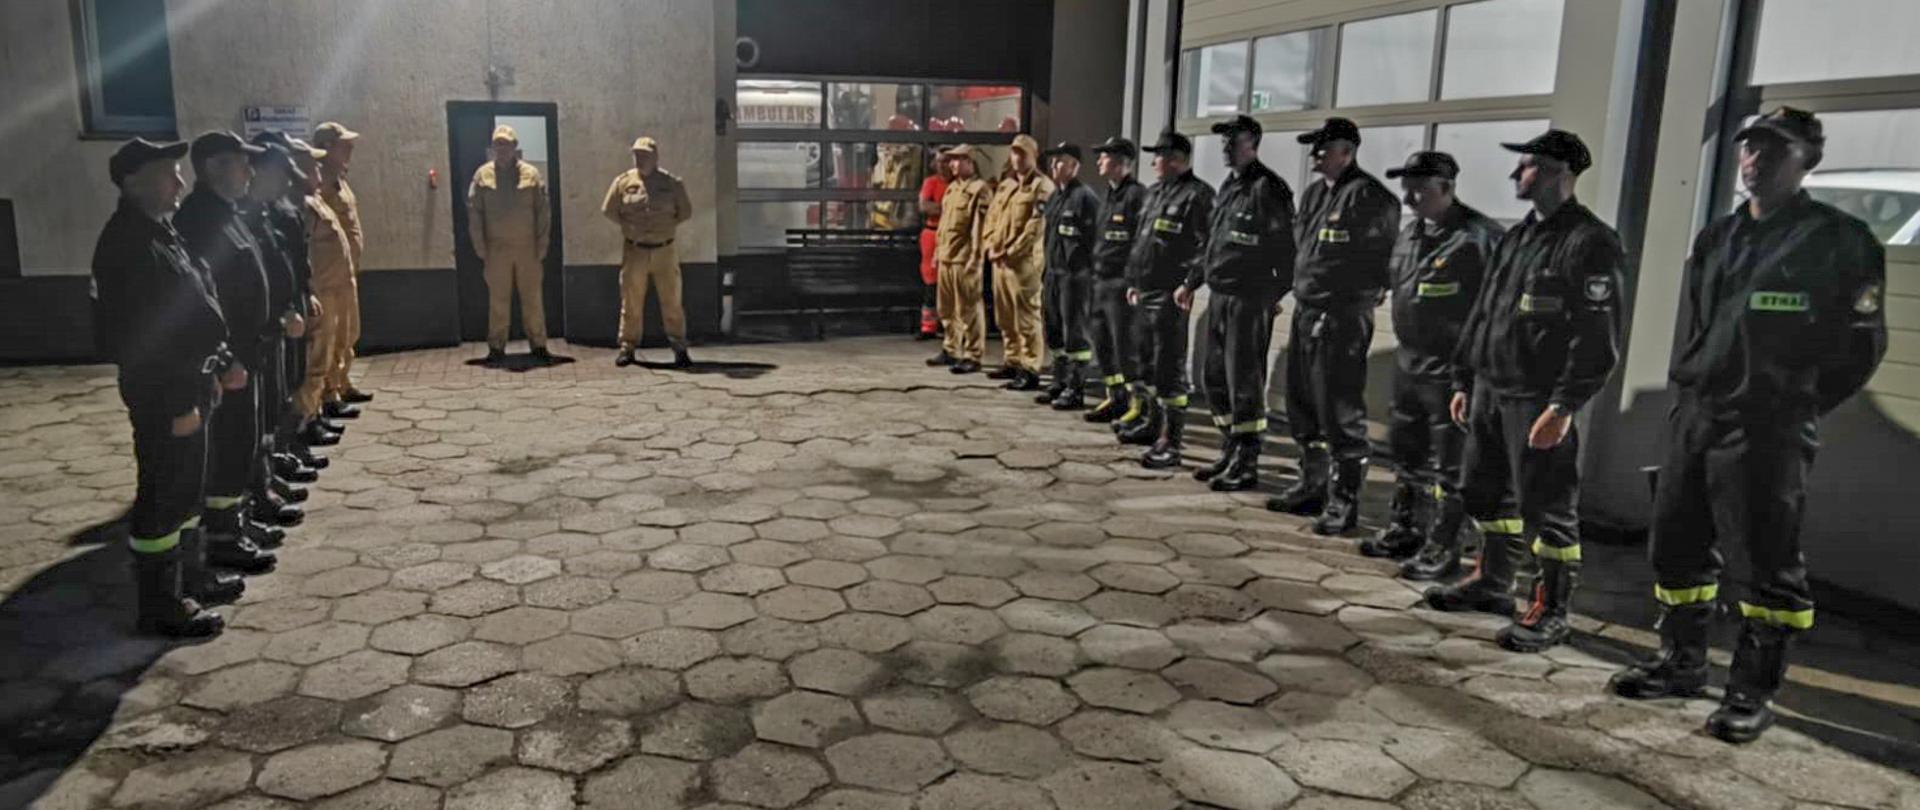 Strażacy podczas powitania.